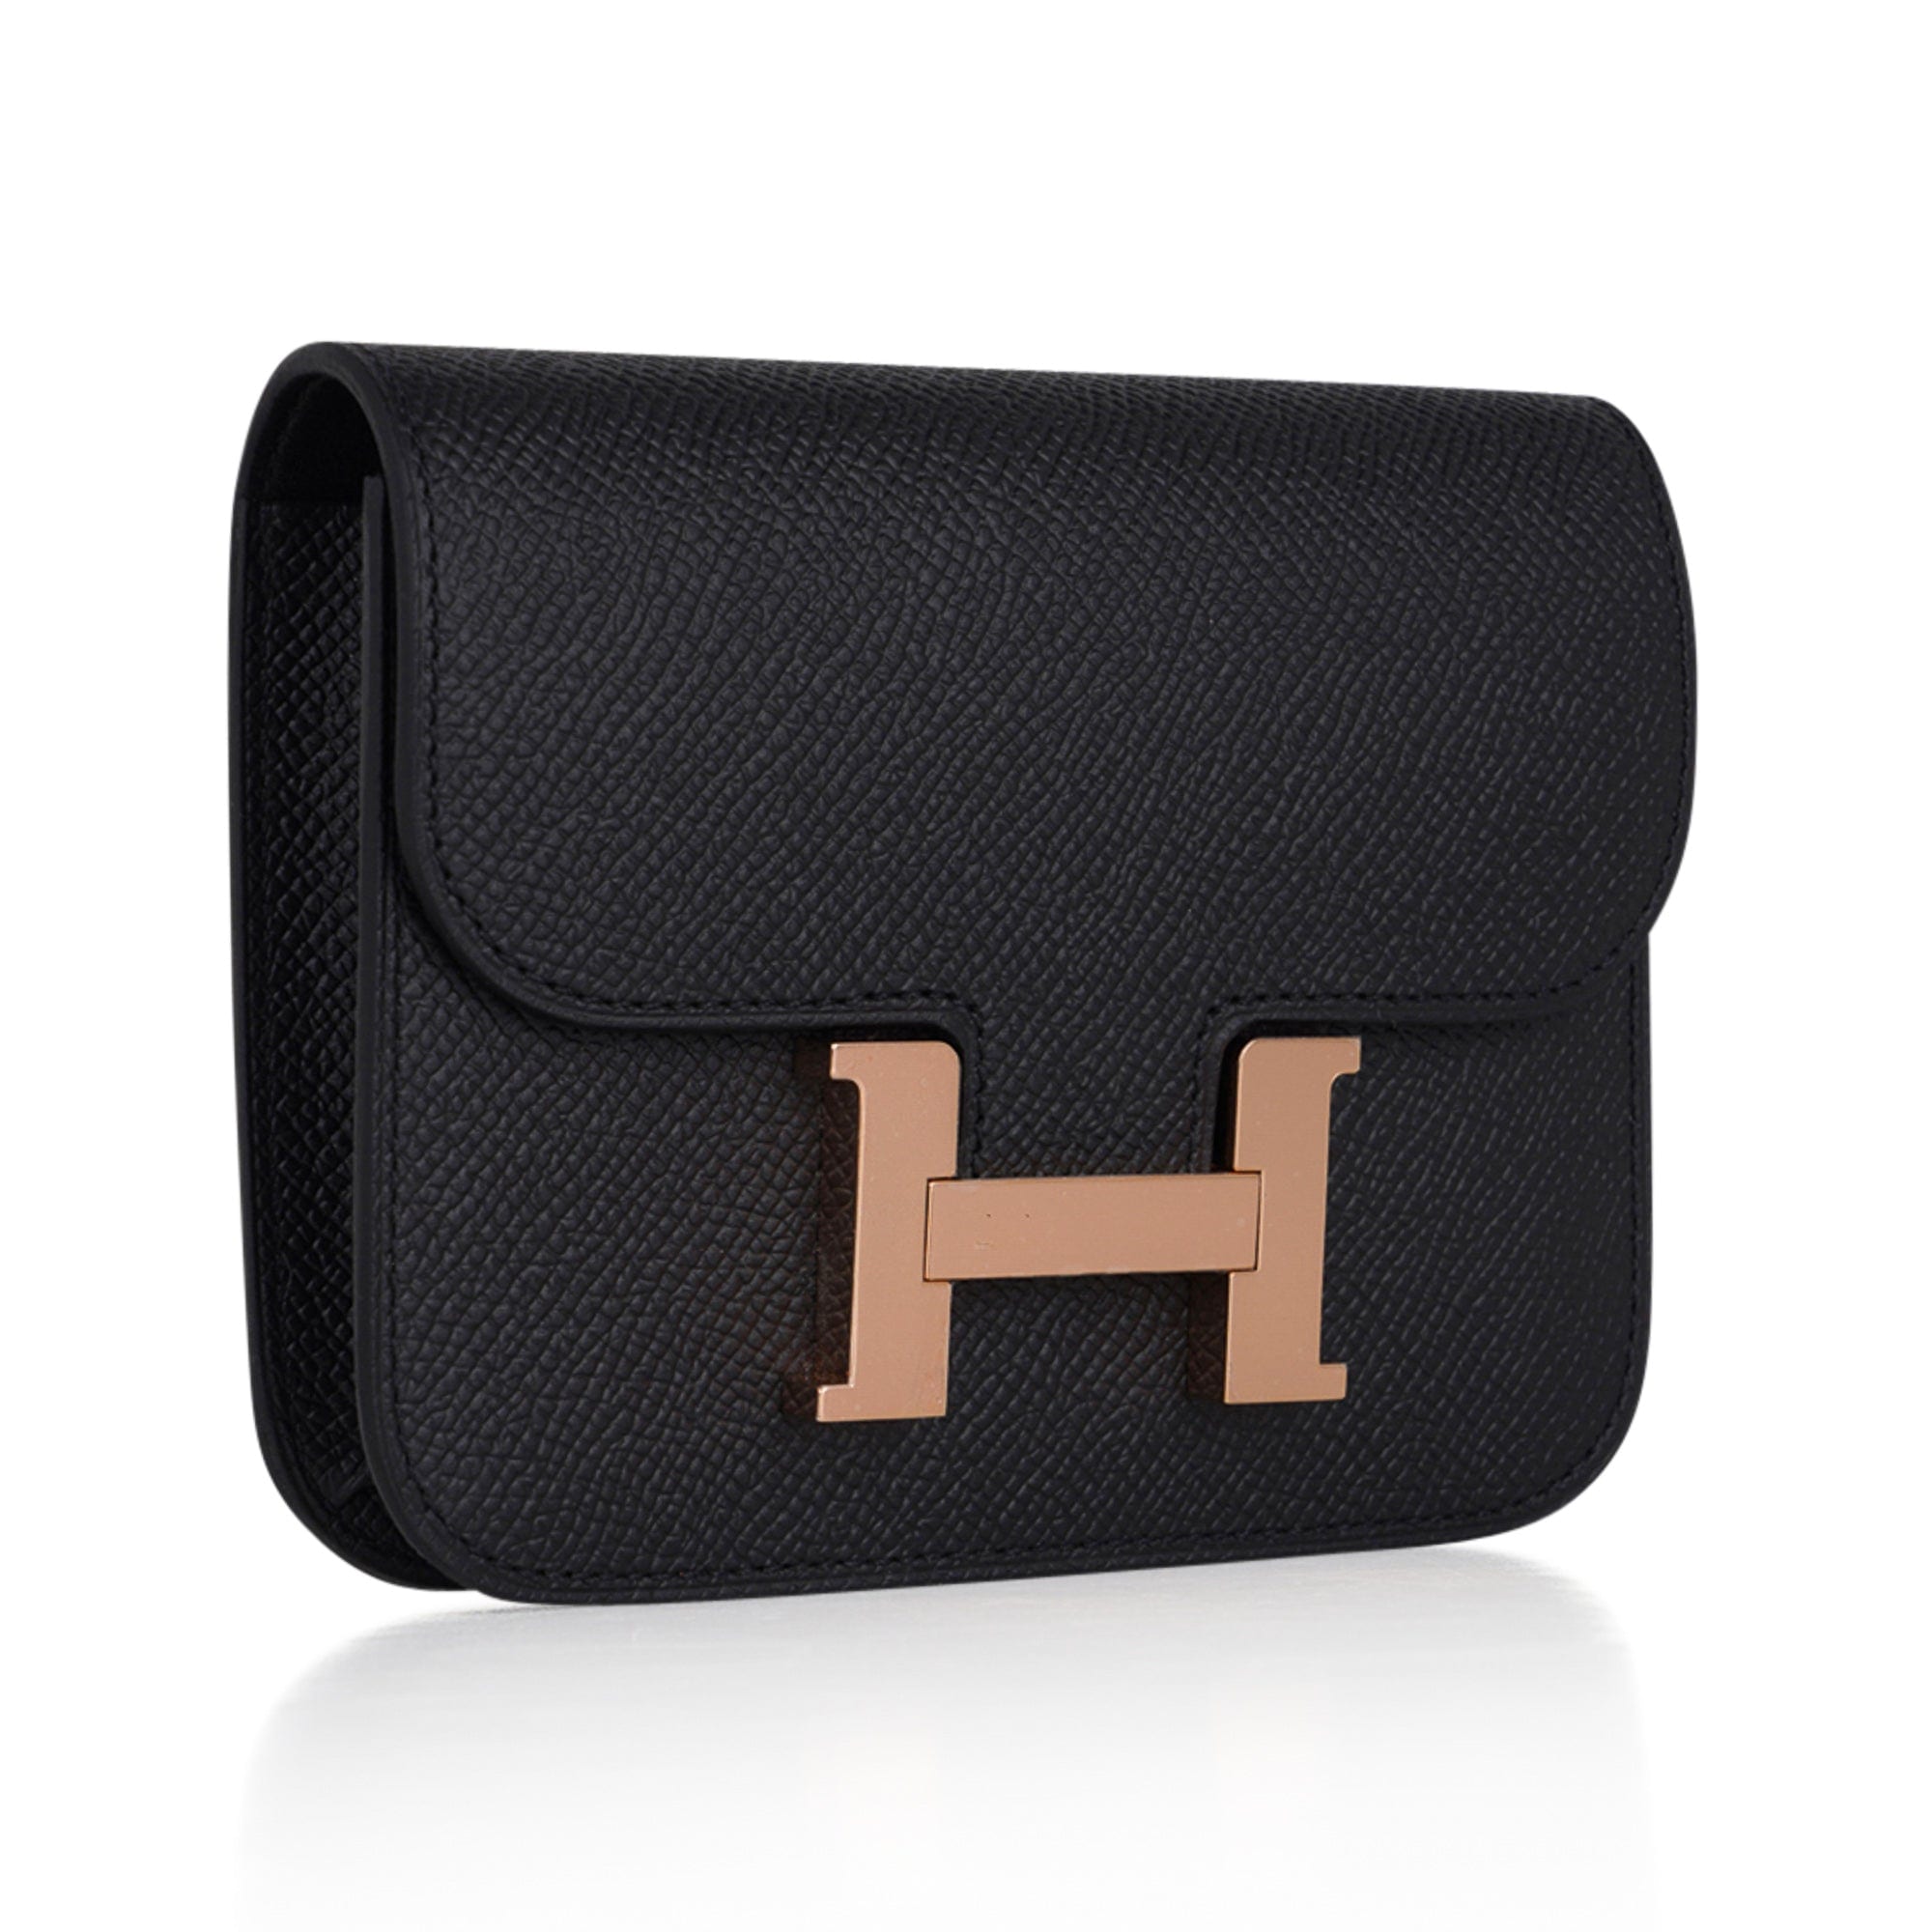 Hermes Constance Slim Wallet Vert Criquet Waist Belt Bag Gold